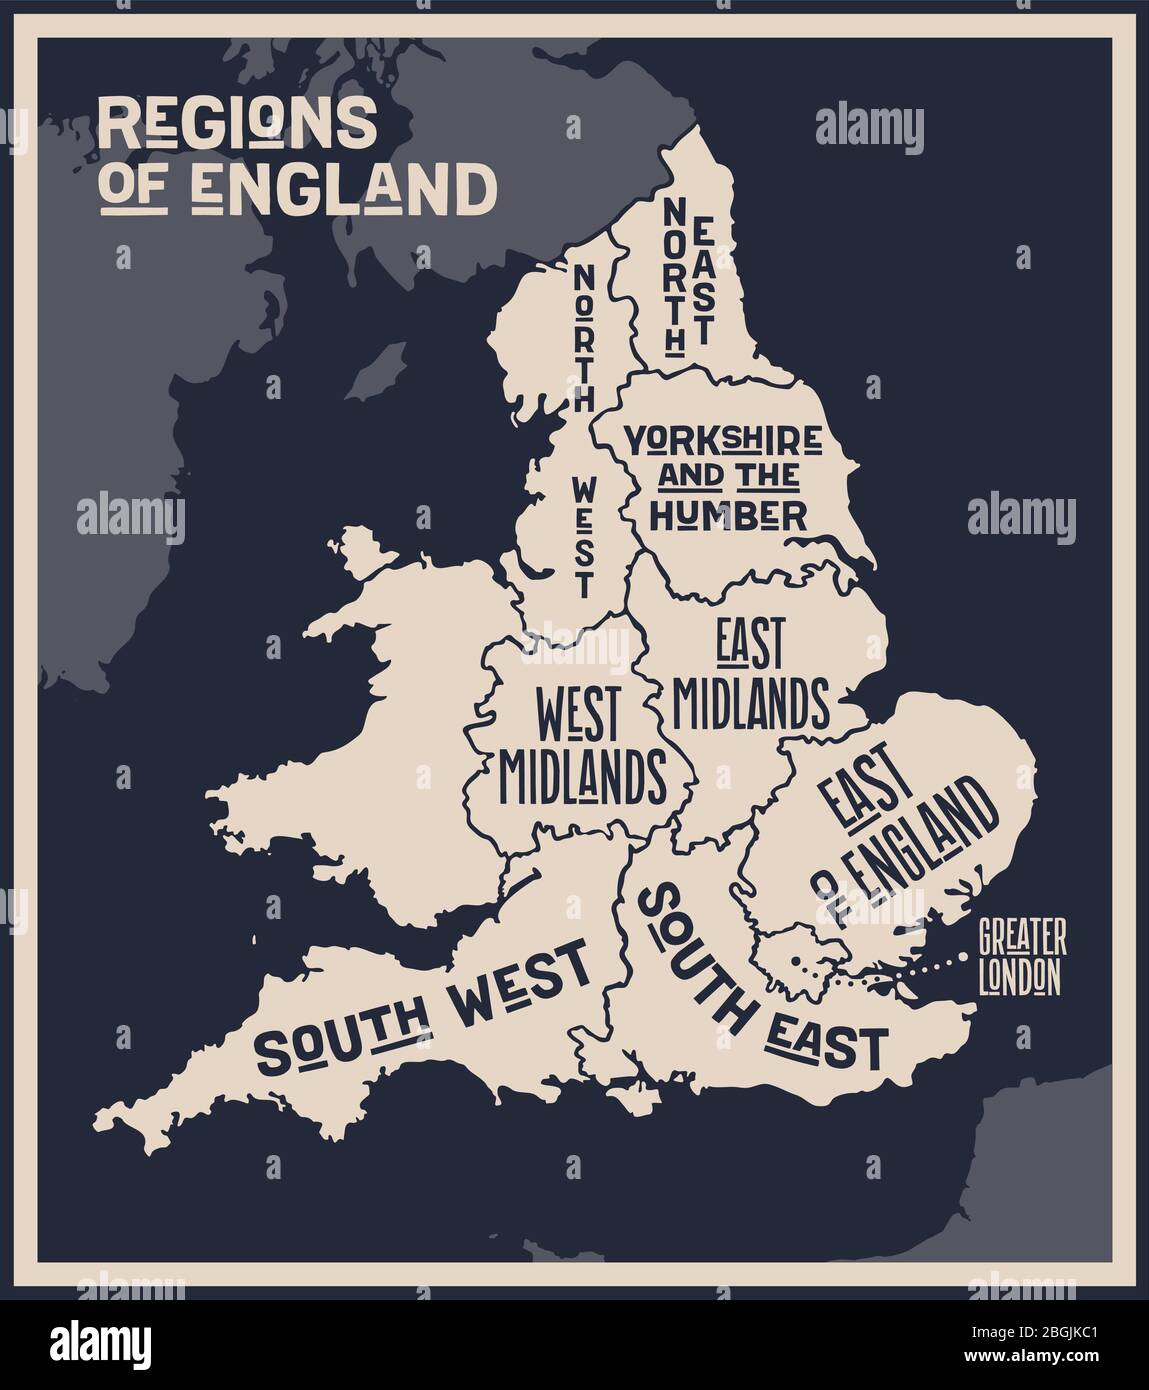 Affiche carte des régions d'Angleterre Illustration de Vecteur